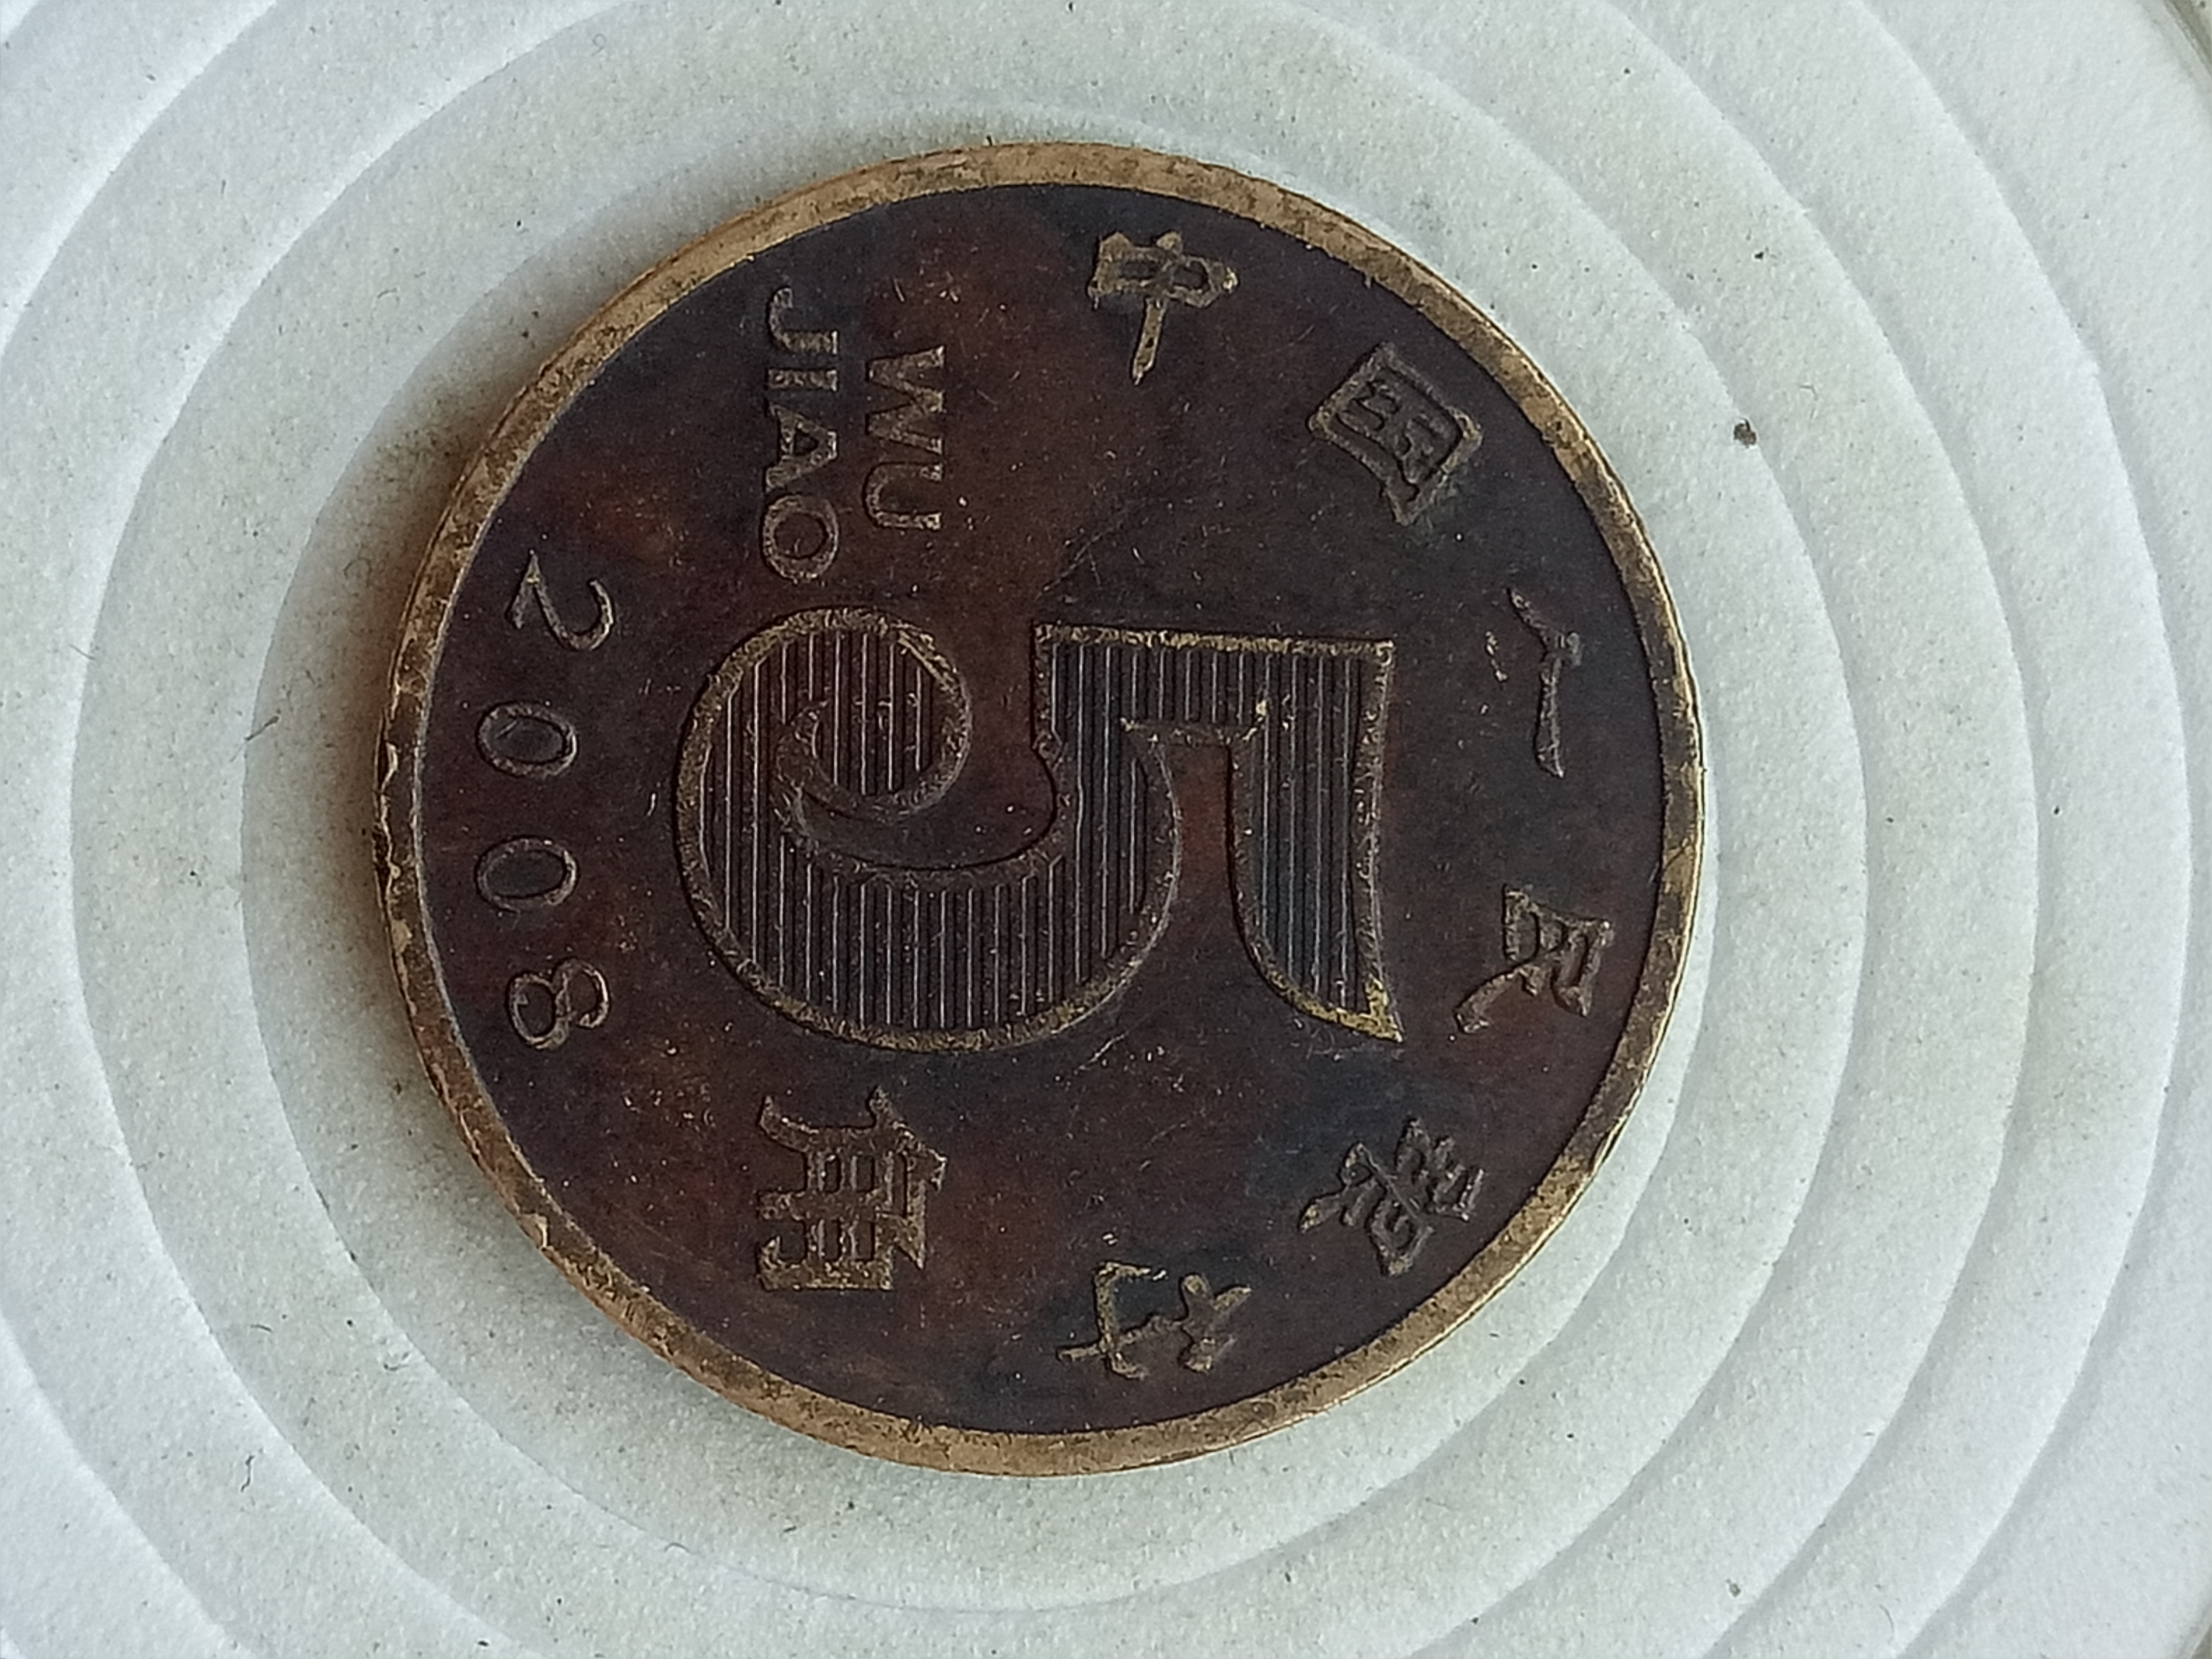 爱藏网 爱藏拍卖 硬币 2008年精品荷花老包浆一枚,包浆均匀厚重,拍卖